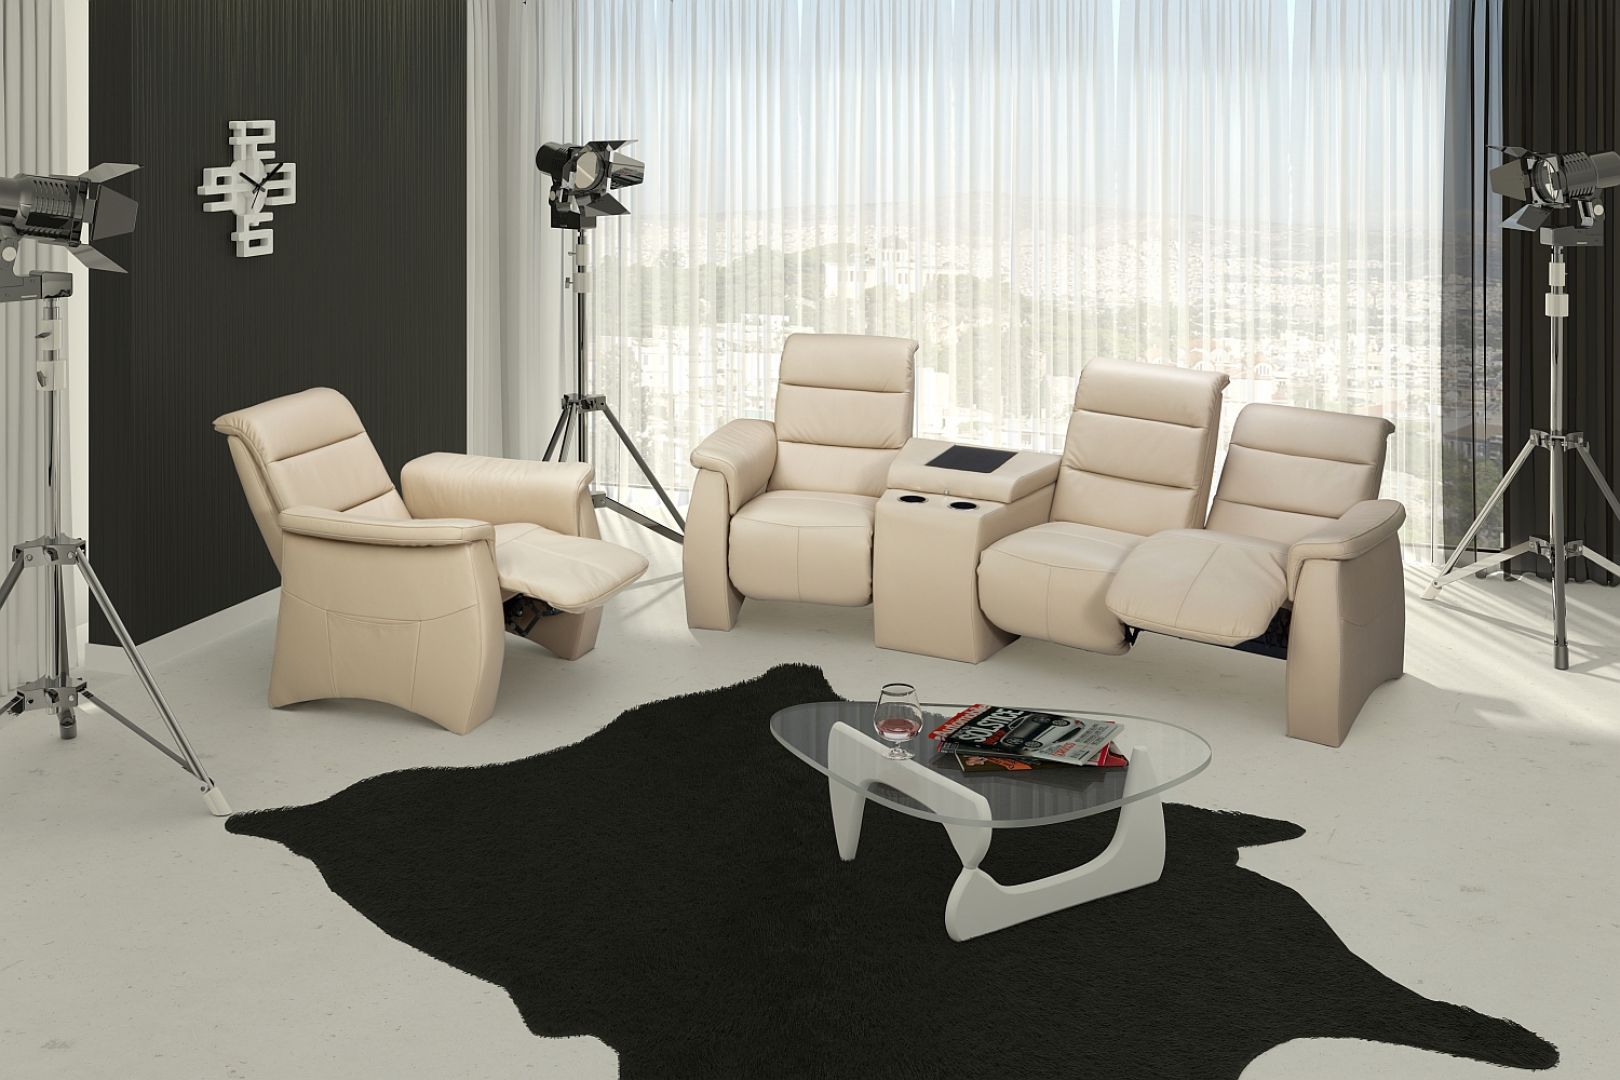 Fotel Smone wraz z sofą pozwolą zaaranżować elegancki kącik wypoczynkowy lub telewizyjny. Fot. AEK 